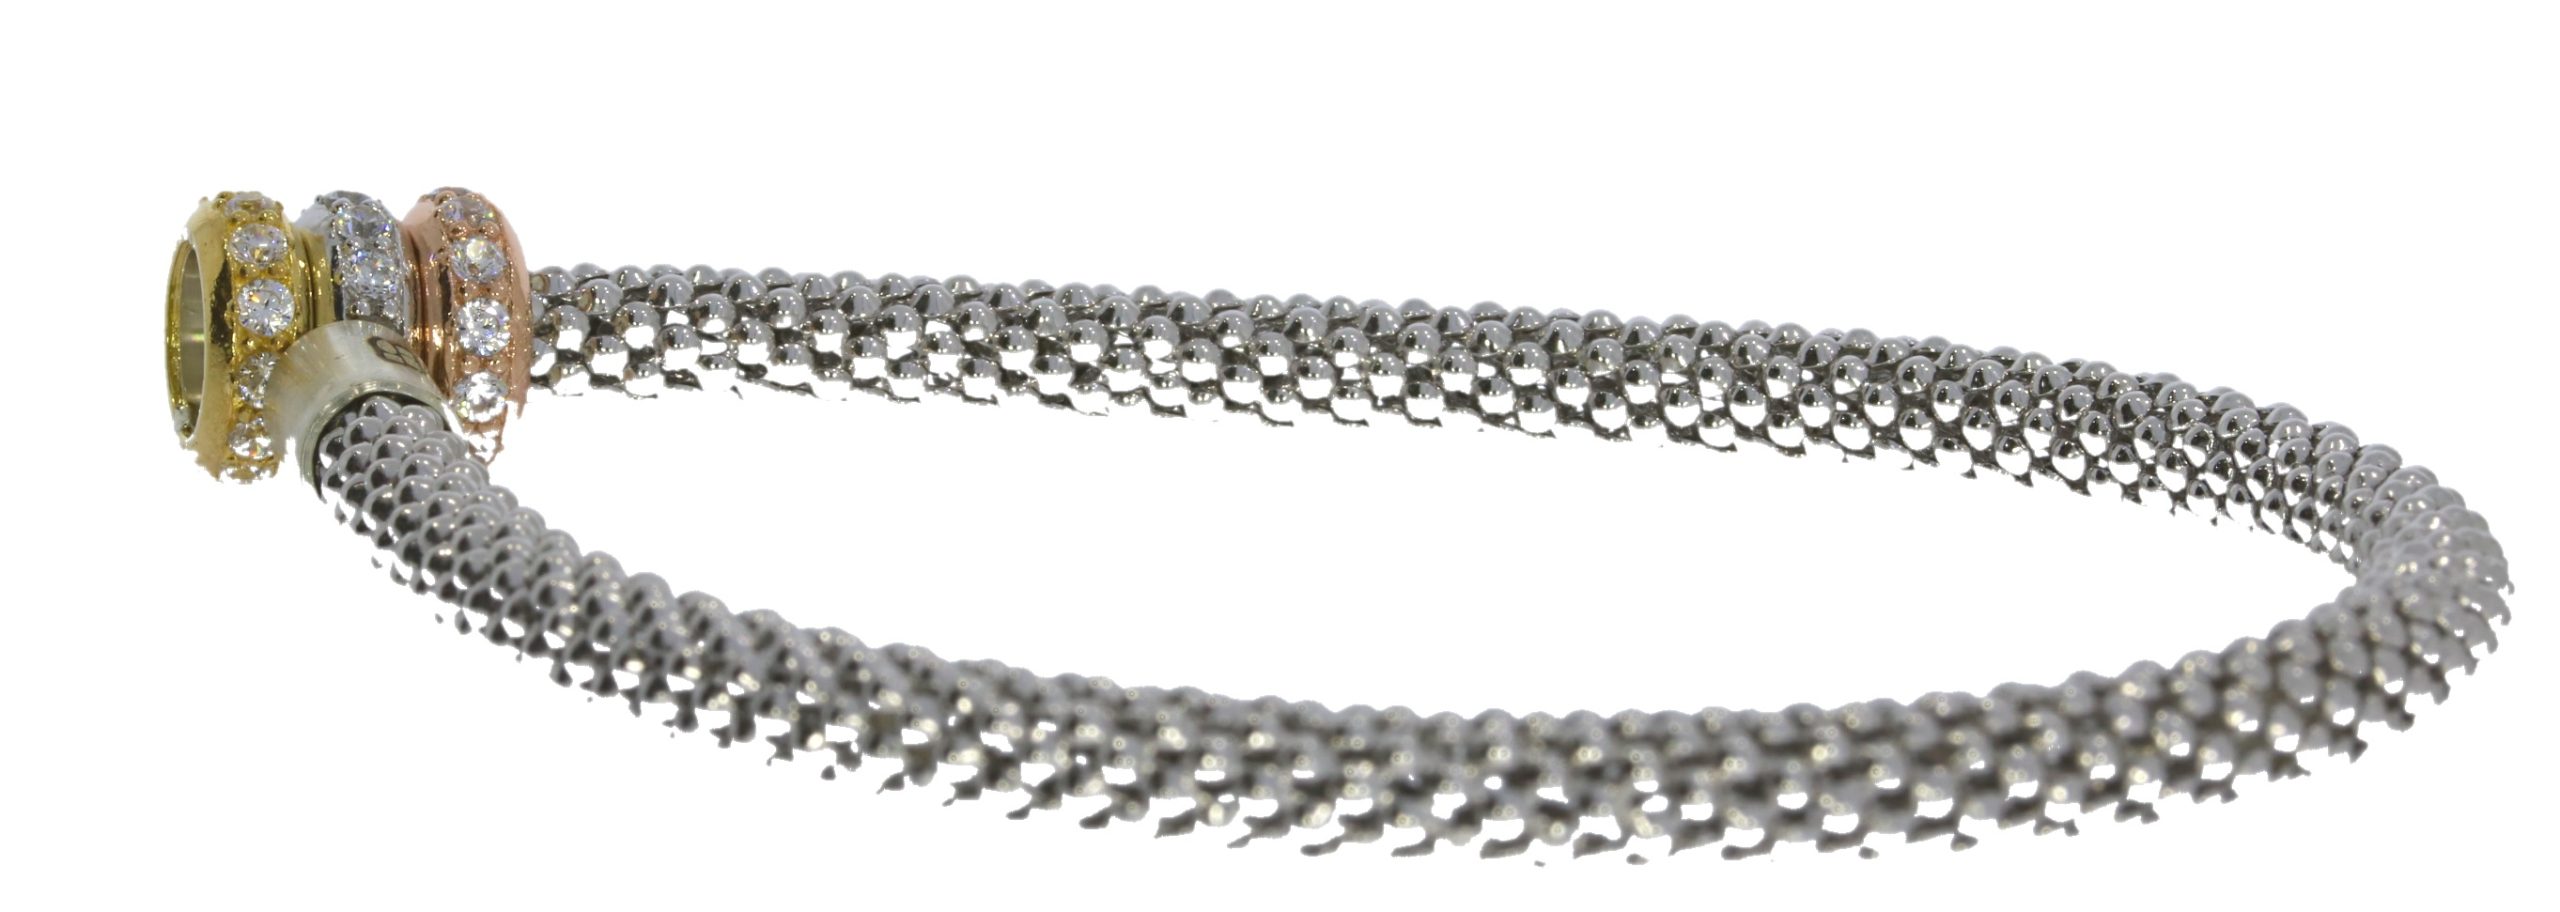 Bracelets Sterling Silver Flexible 3 Colour Ring Crystal Set Design Bracelet